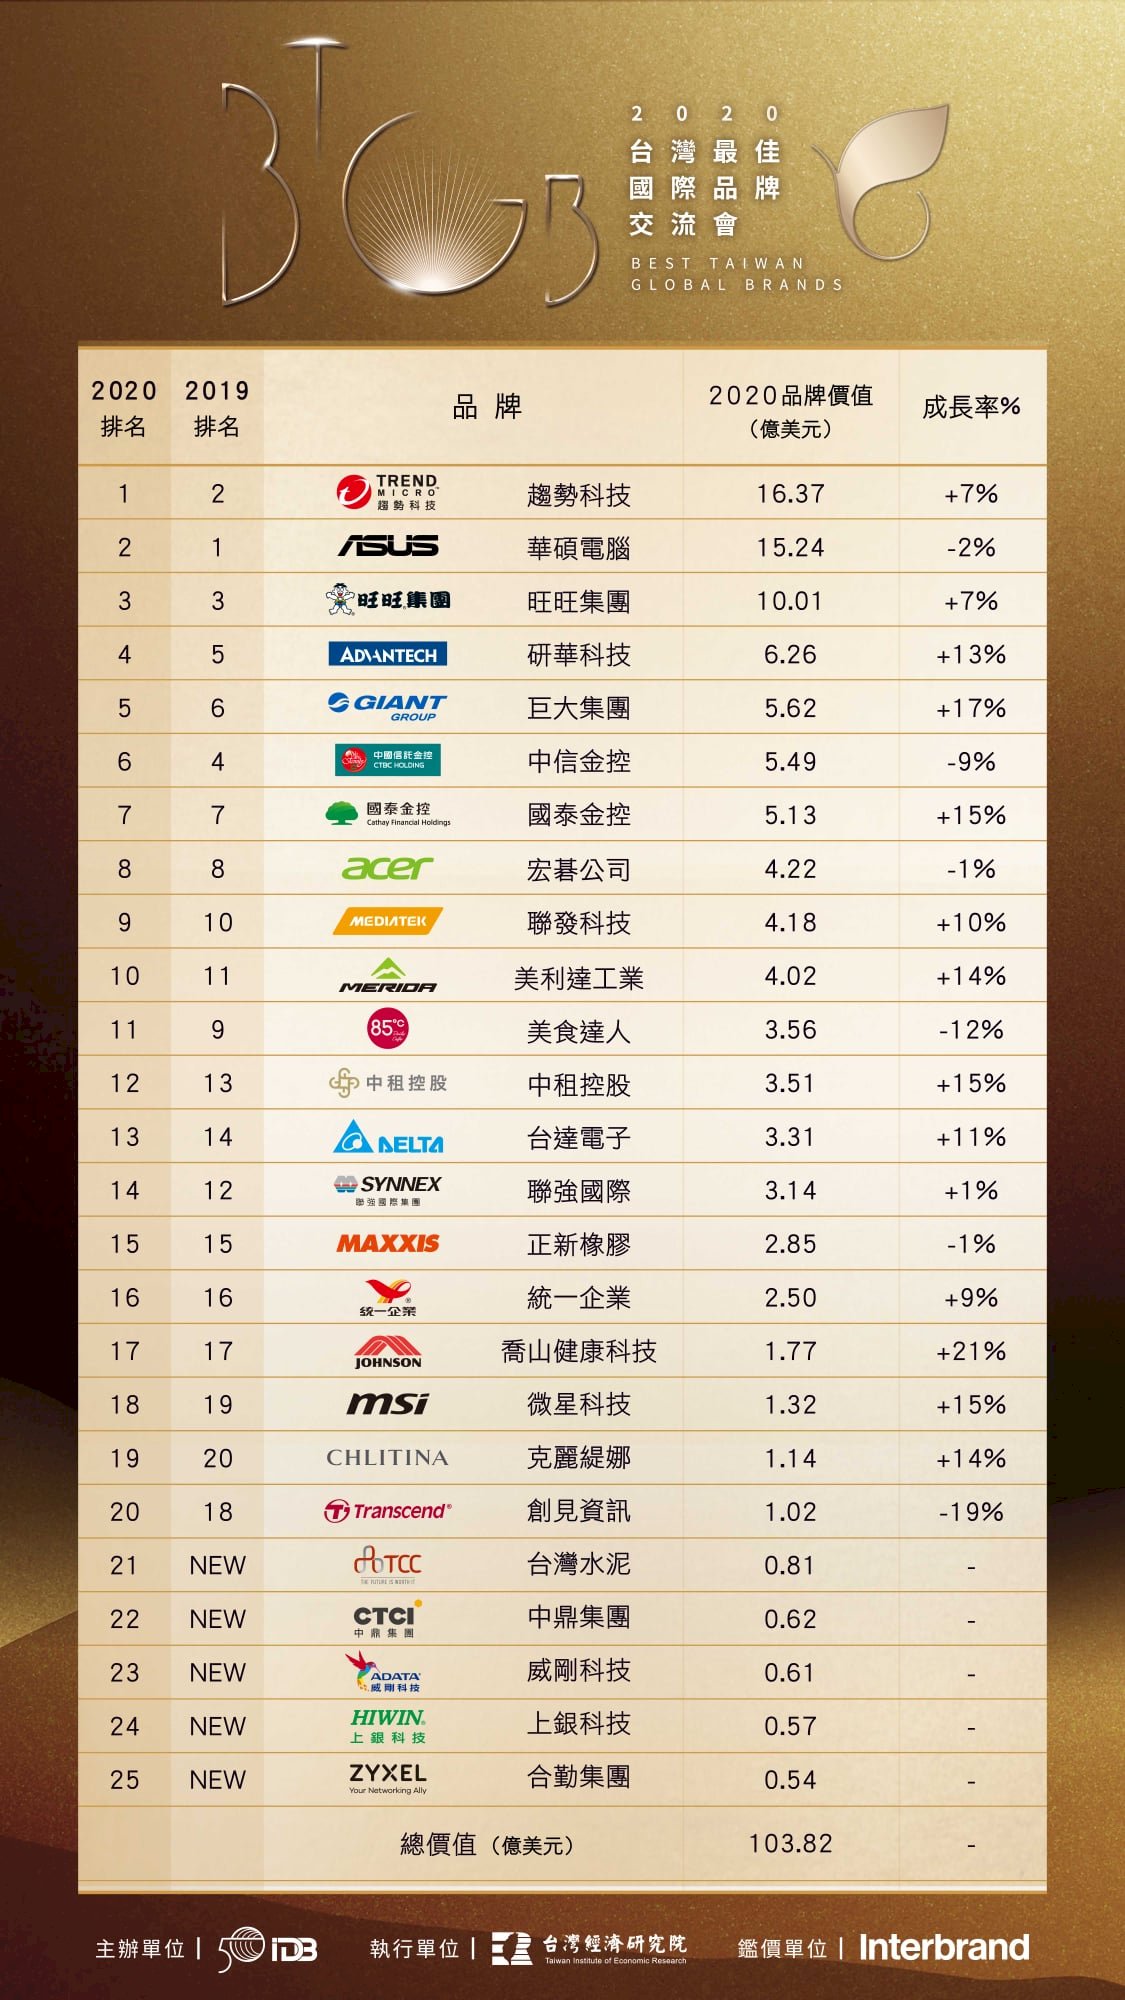 台灣國際品牌價值重登百億美元 今年冠軍換人做做看